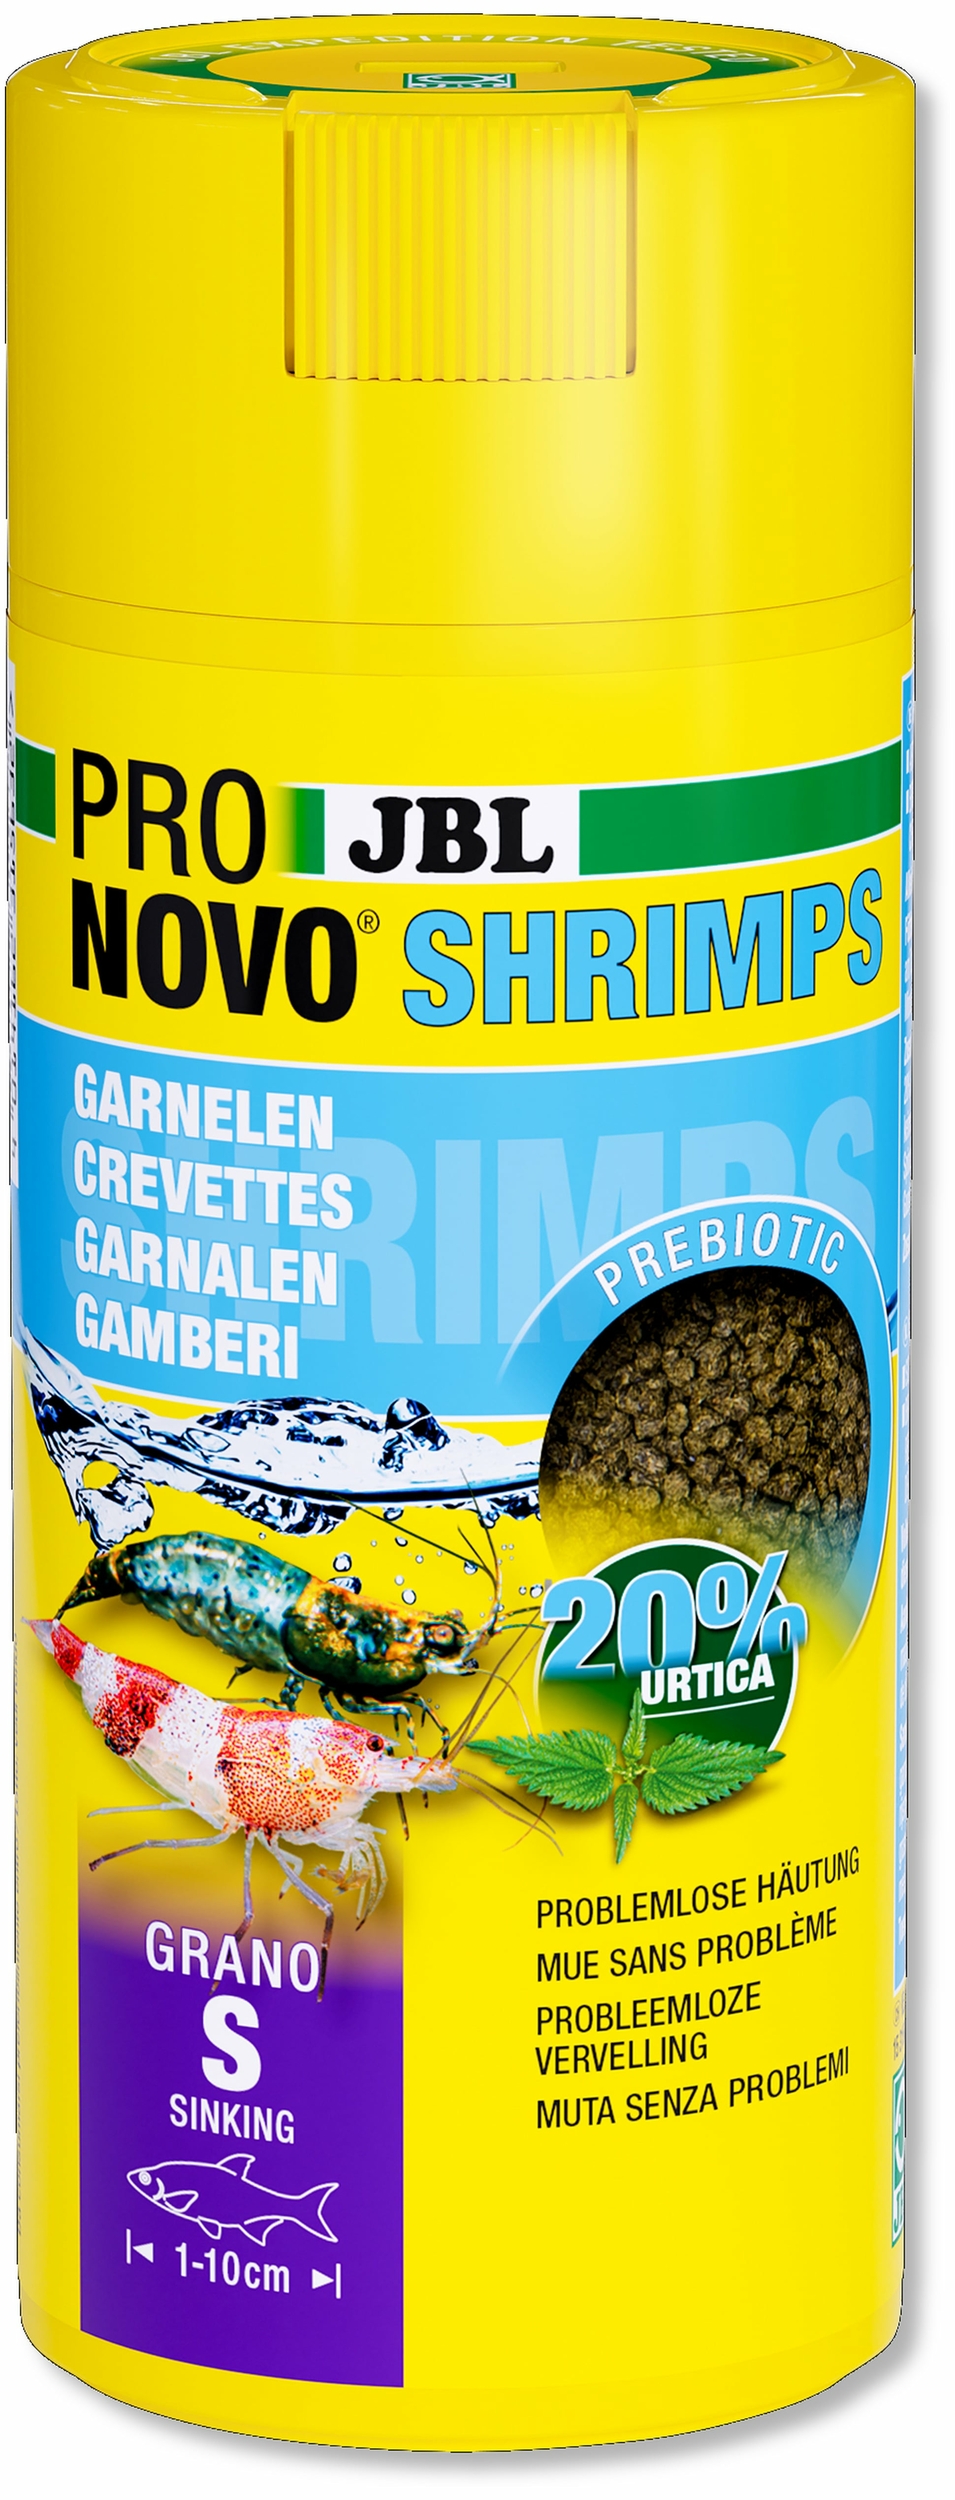 jbl-pronovo-shrimps-grano-s-250-ml-nourriture-en-granules-pour-crevettes-d-eau-douce-de-1-a-10-cm-min